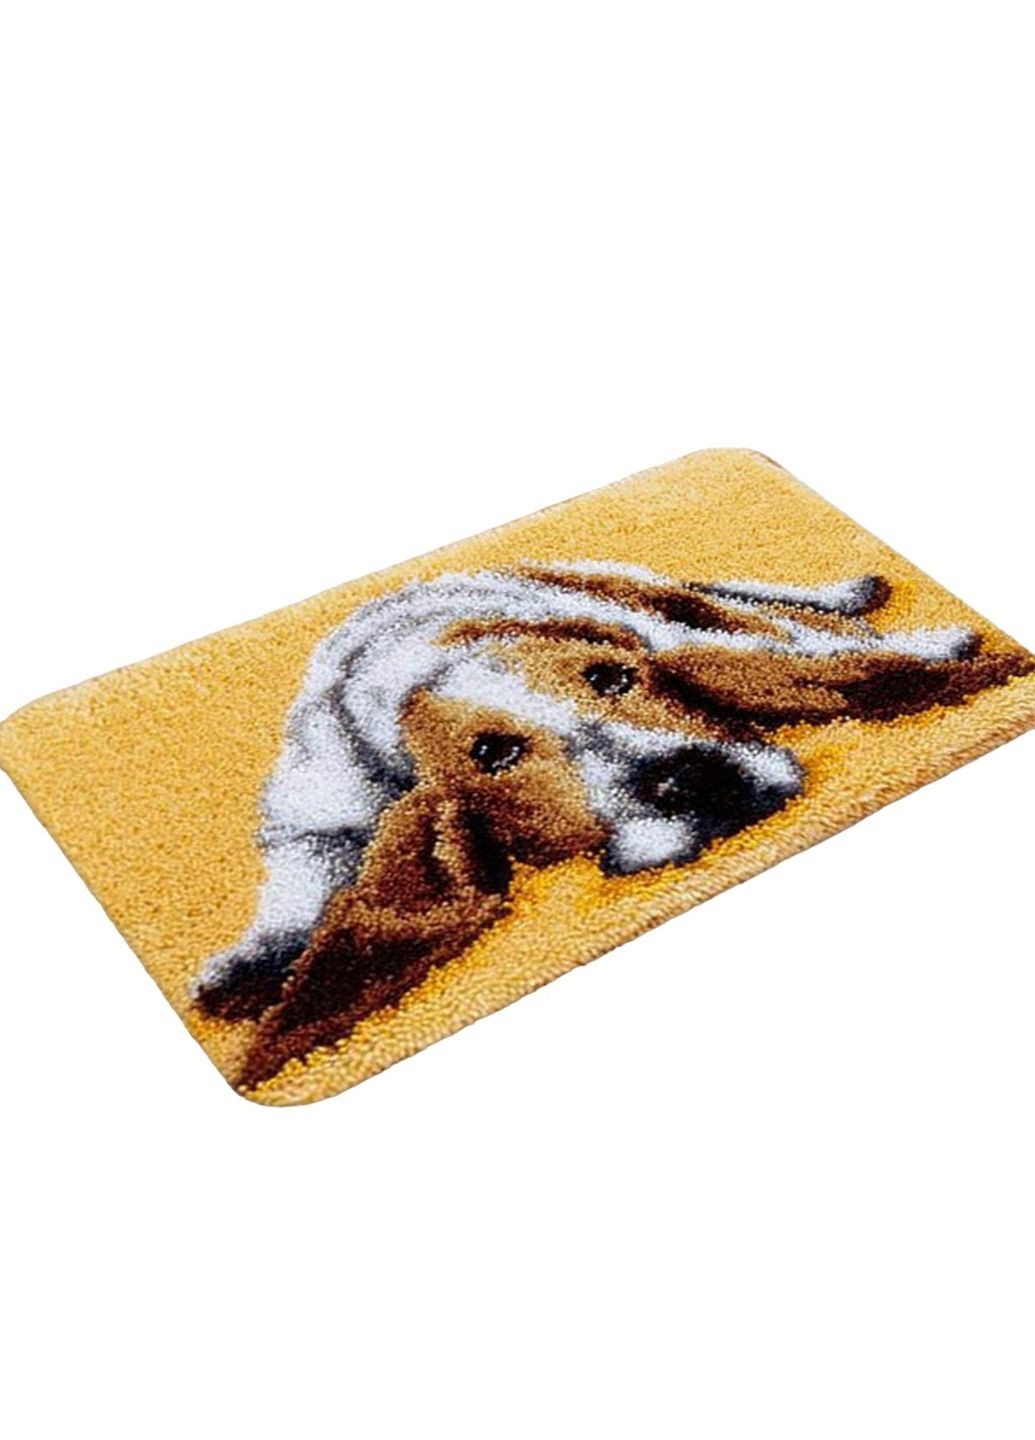 Набор для ковровой вышивки коврик собака бигль (основа-канва, нити, крючок для ковровой вышивки) No Brand 4459 (293943058)